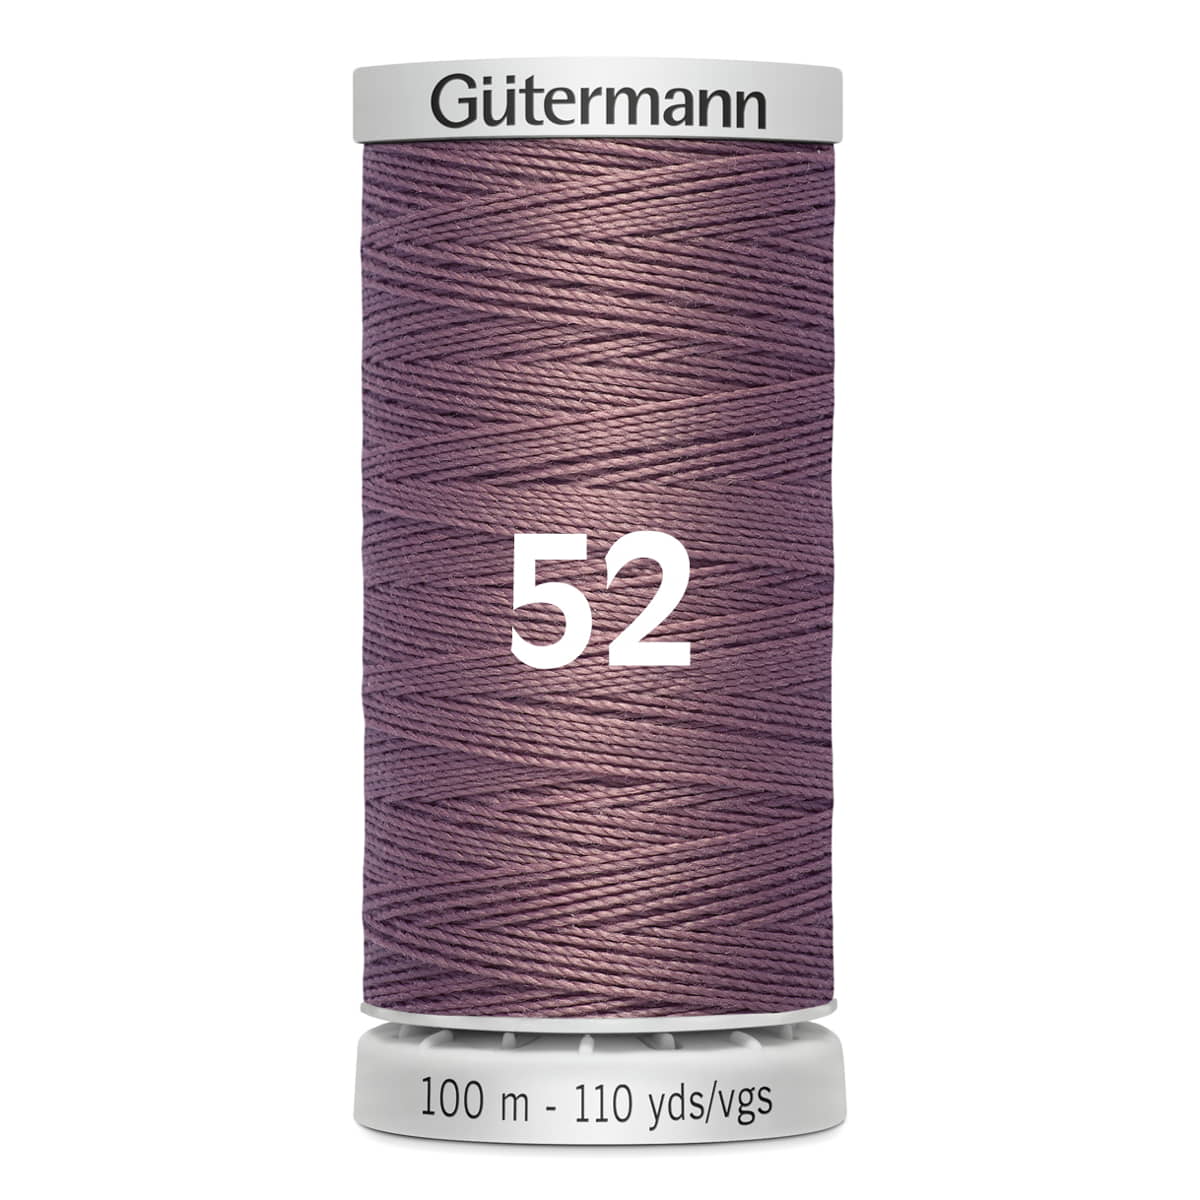 Gutermann super sterk naaigaren | 100m | 52 oud roze naaigaren GM-100-SS-M782-52 4008015416447